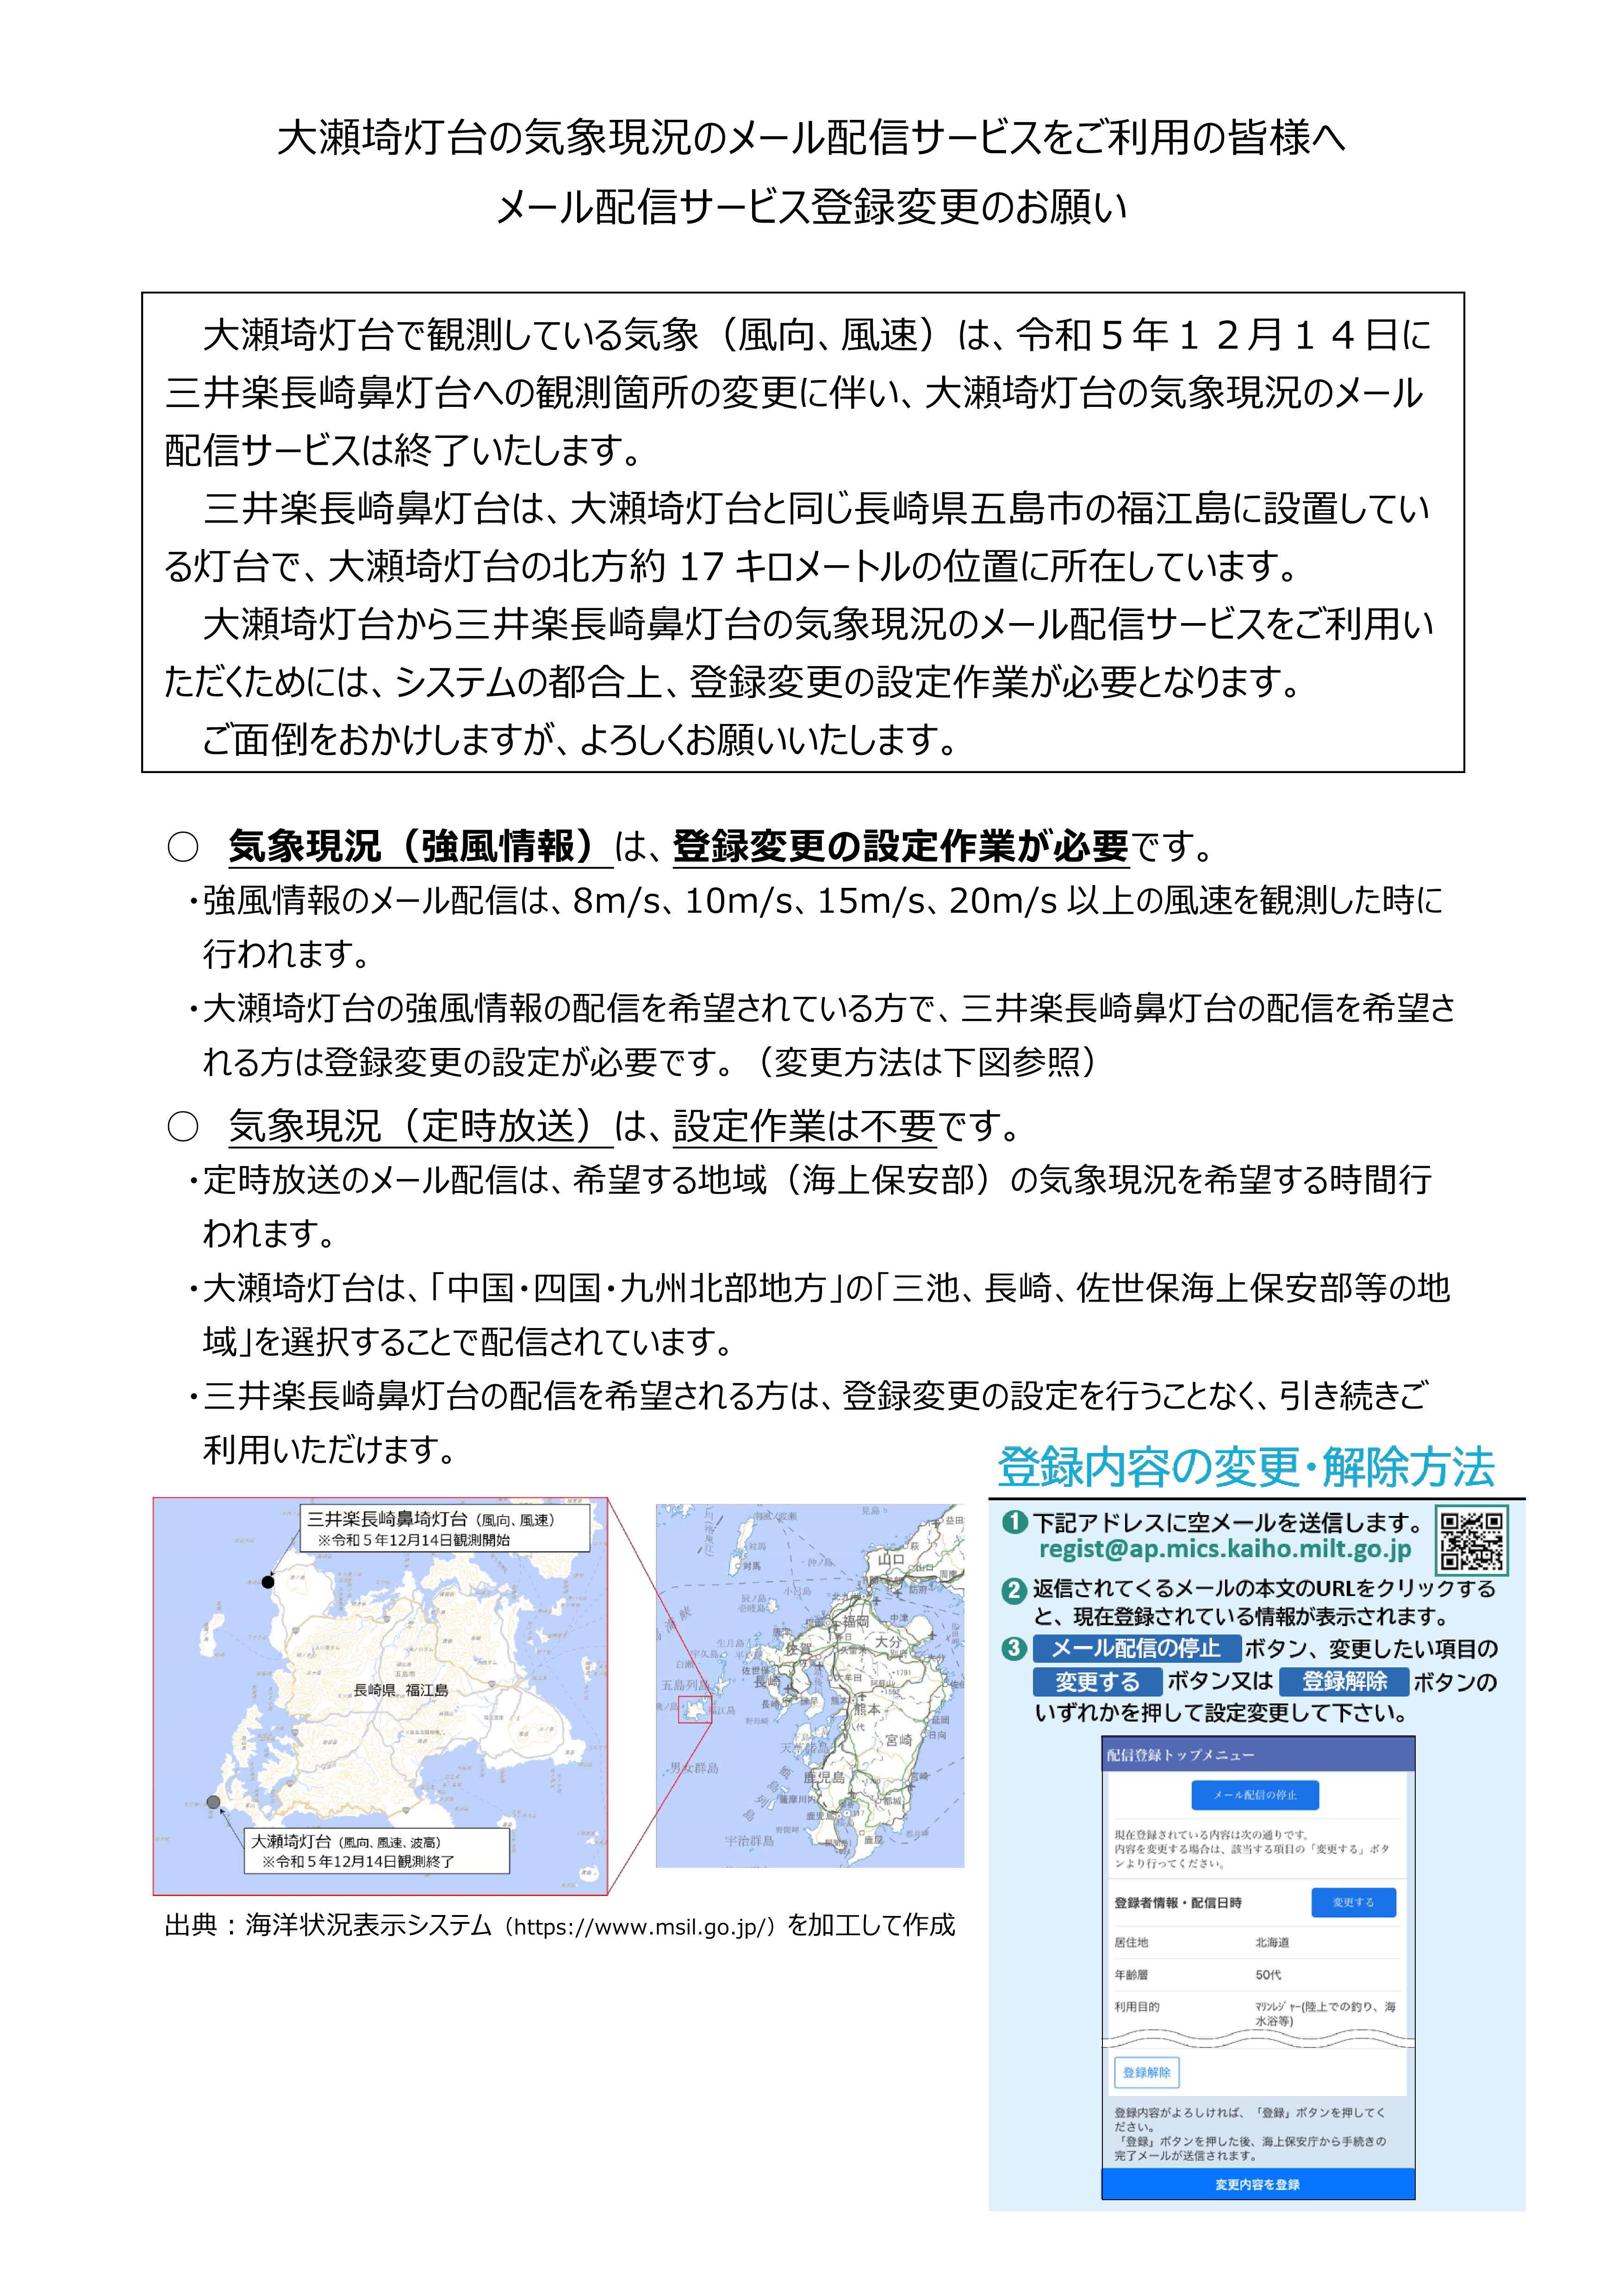 海の安全情報（沿岸域情報提供システム）